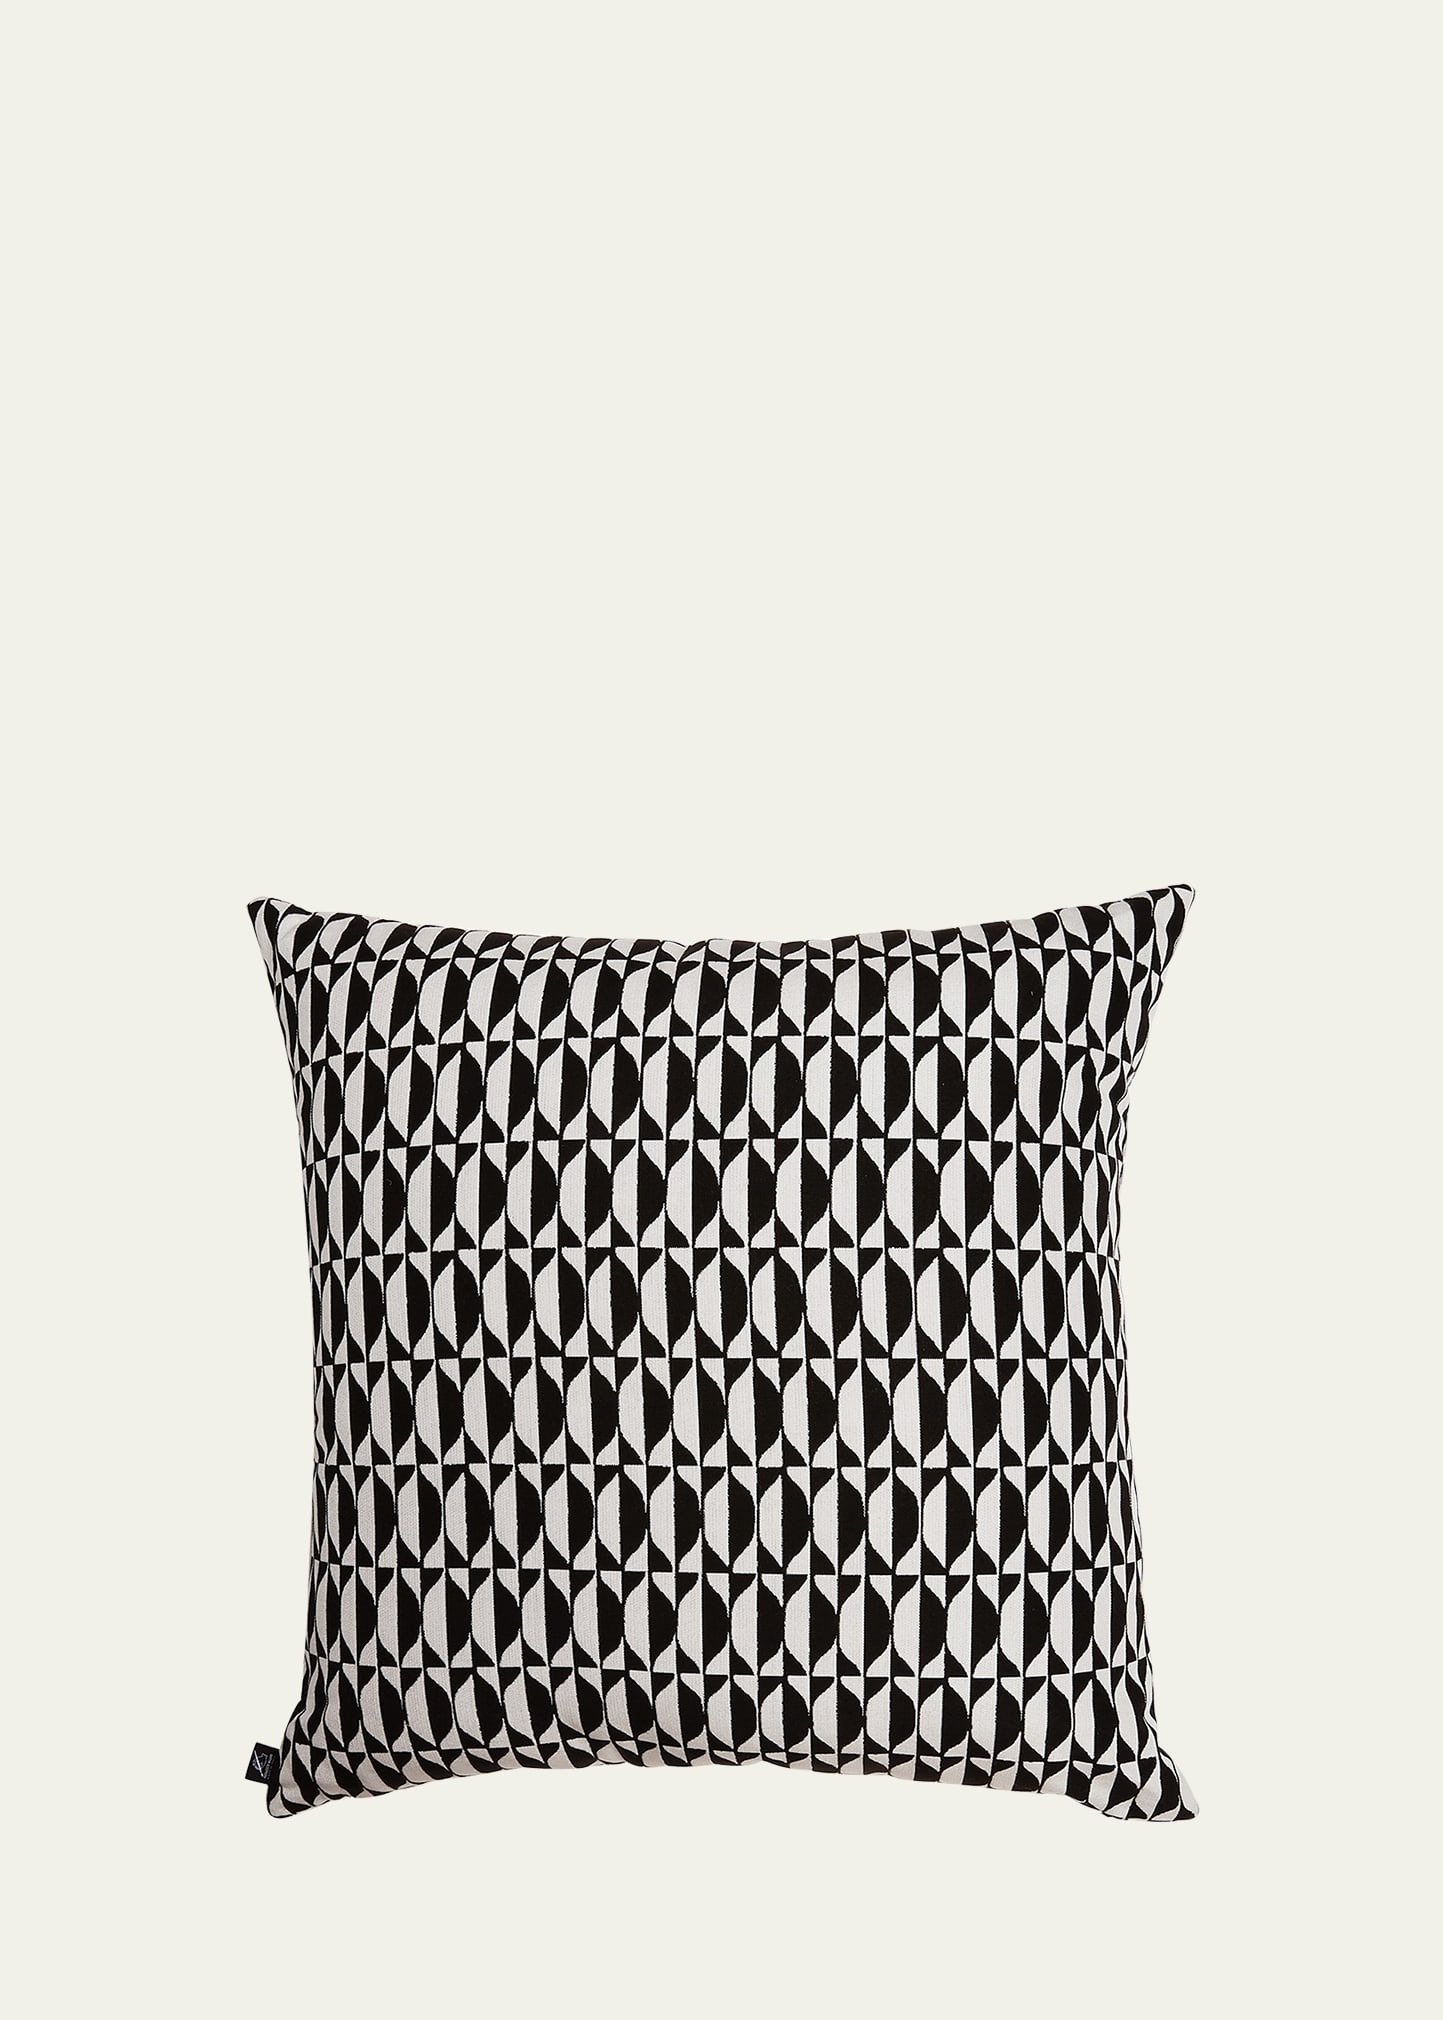 Geometric Outdoor Cushion, 24"Sq.